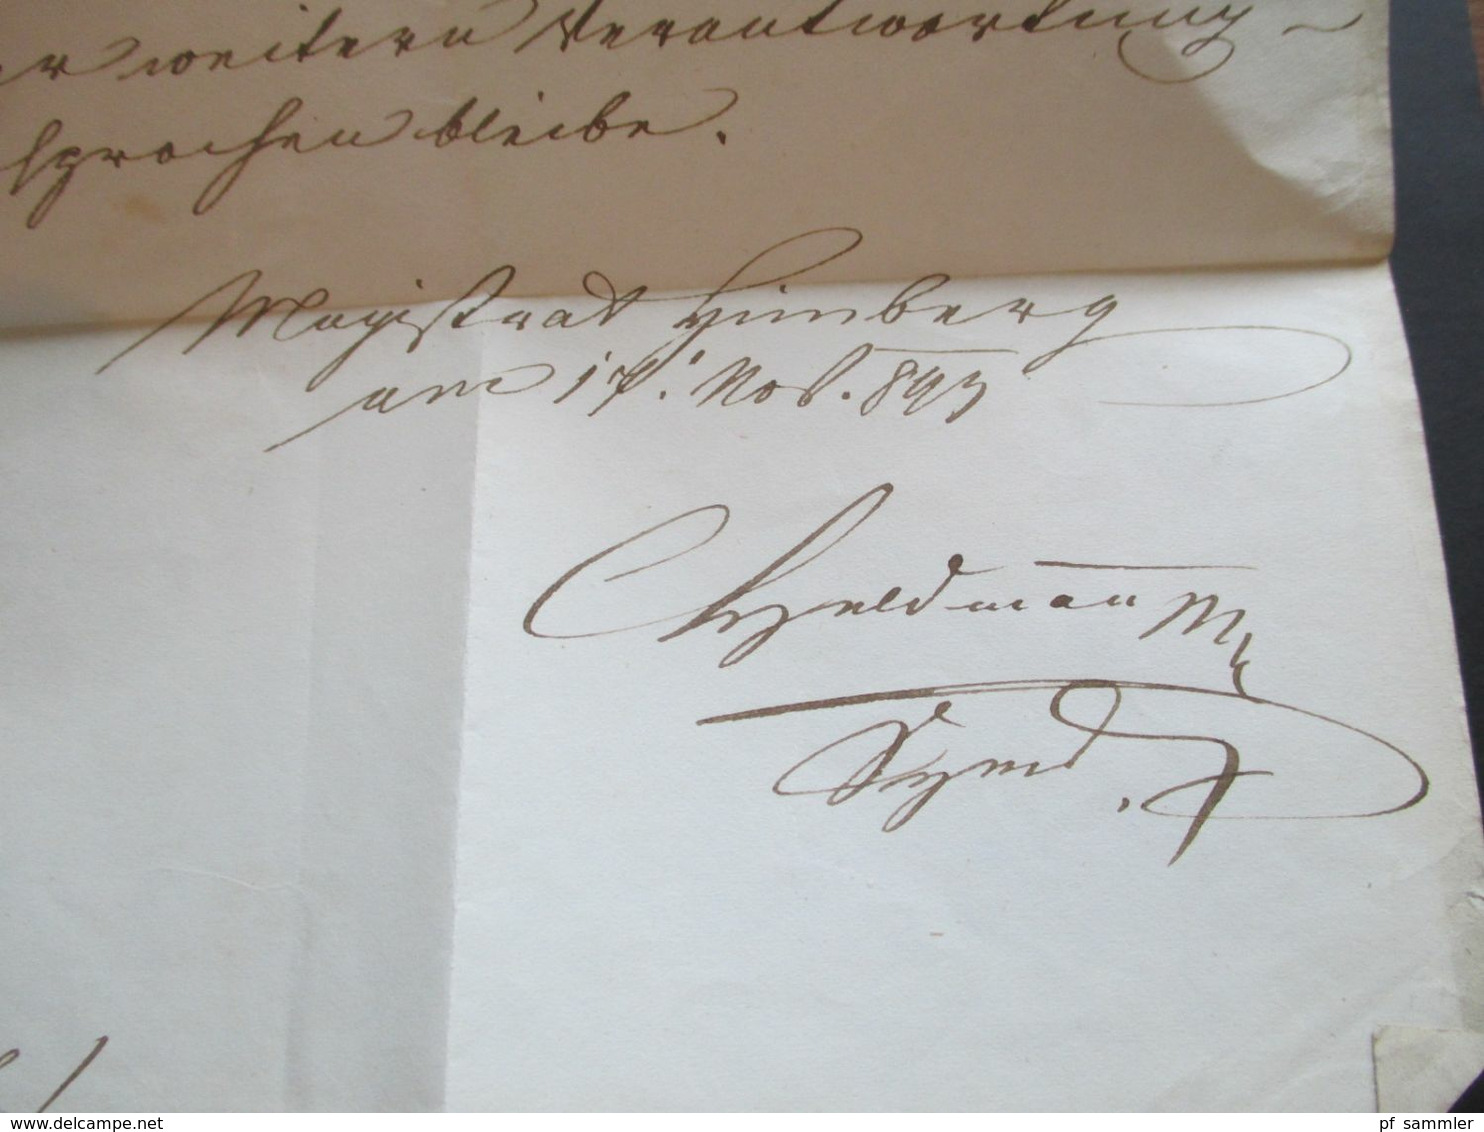 Österreich 17.11.1847 Dienstbrief mit Inhalt und rückseitig mit Fahnenstempel Himberg 1. Exp.